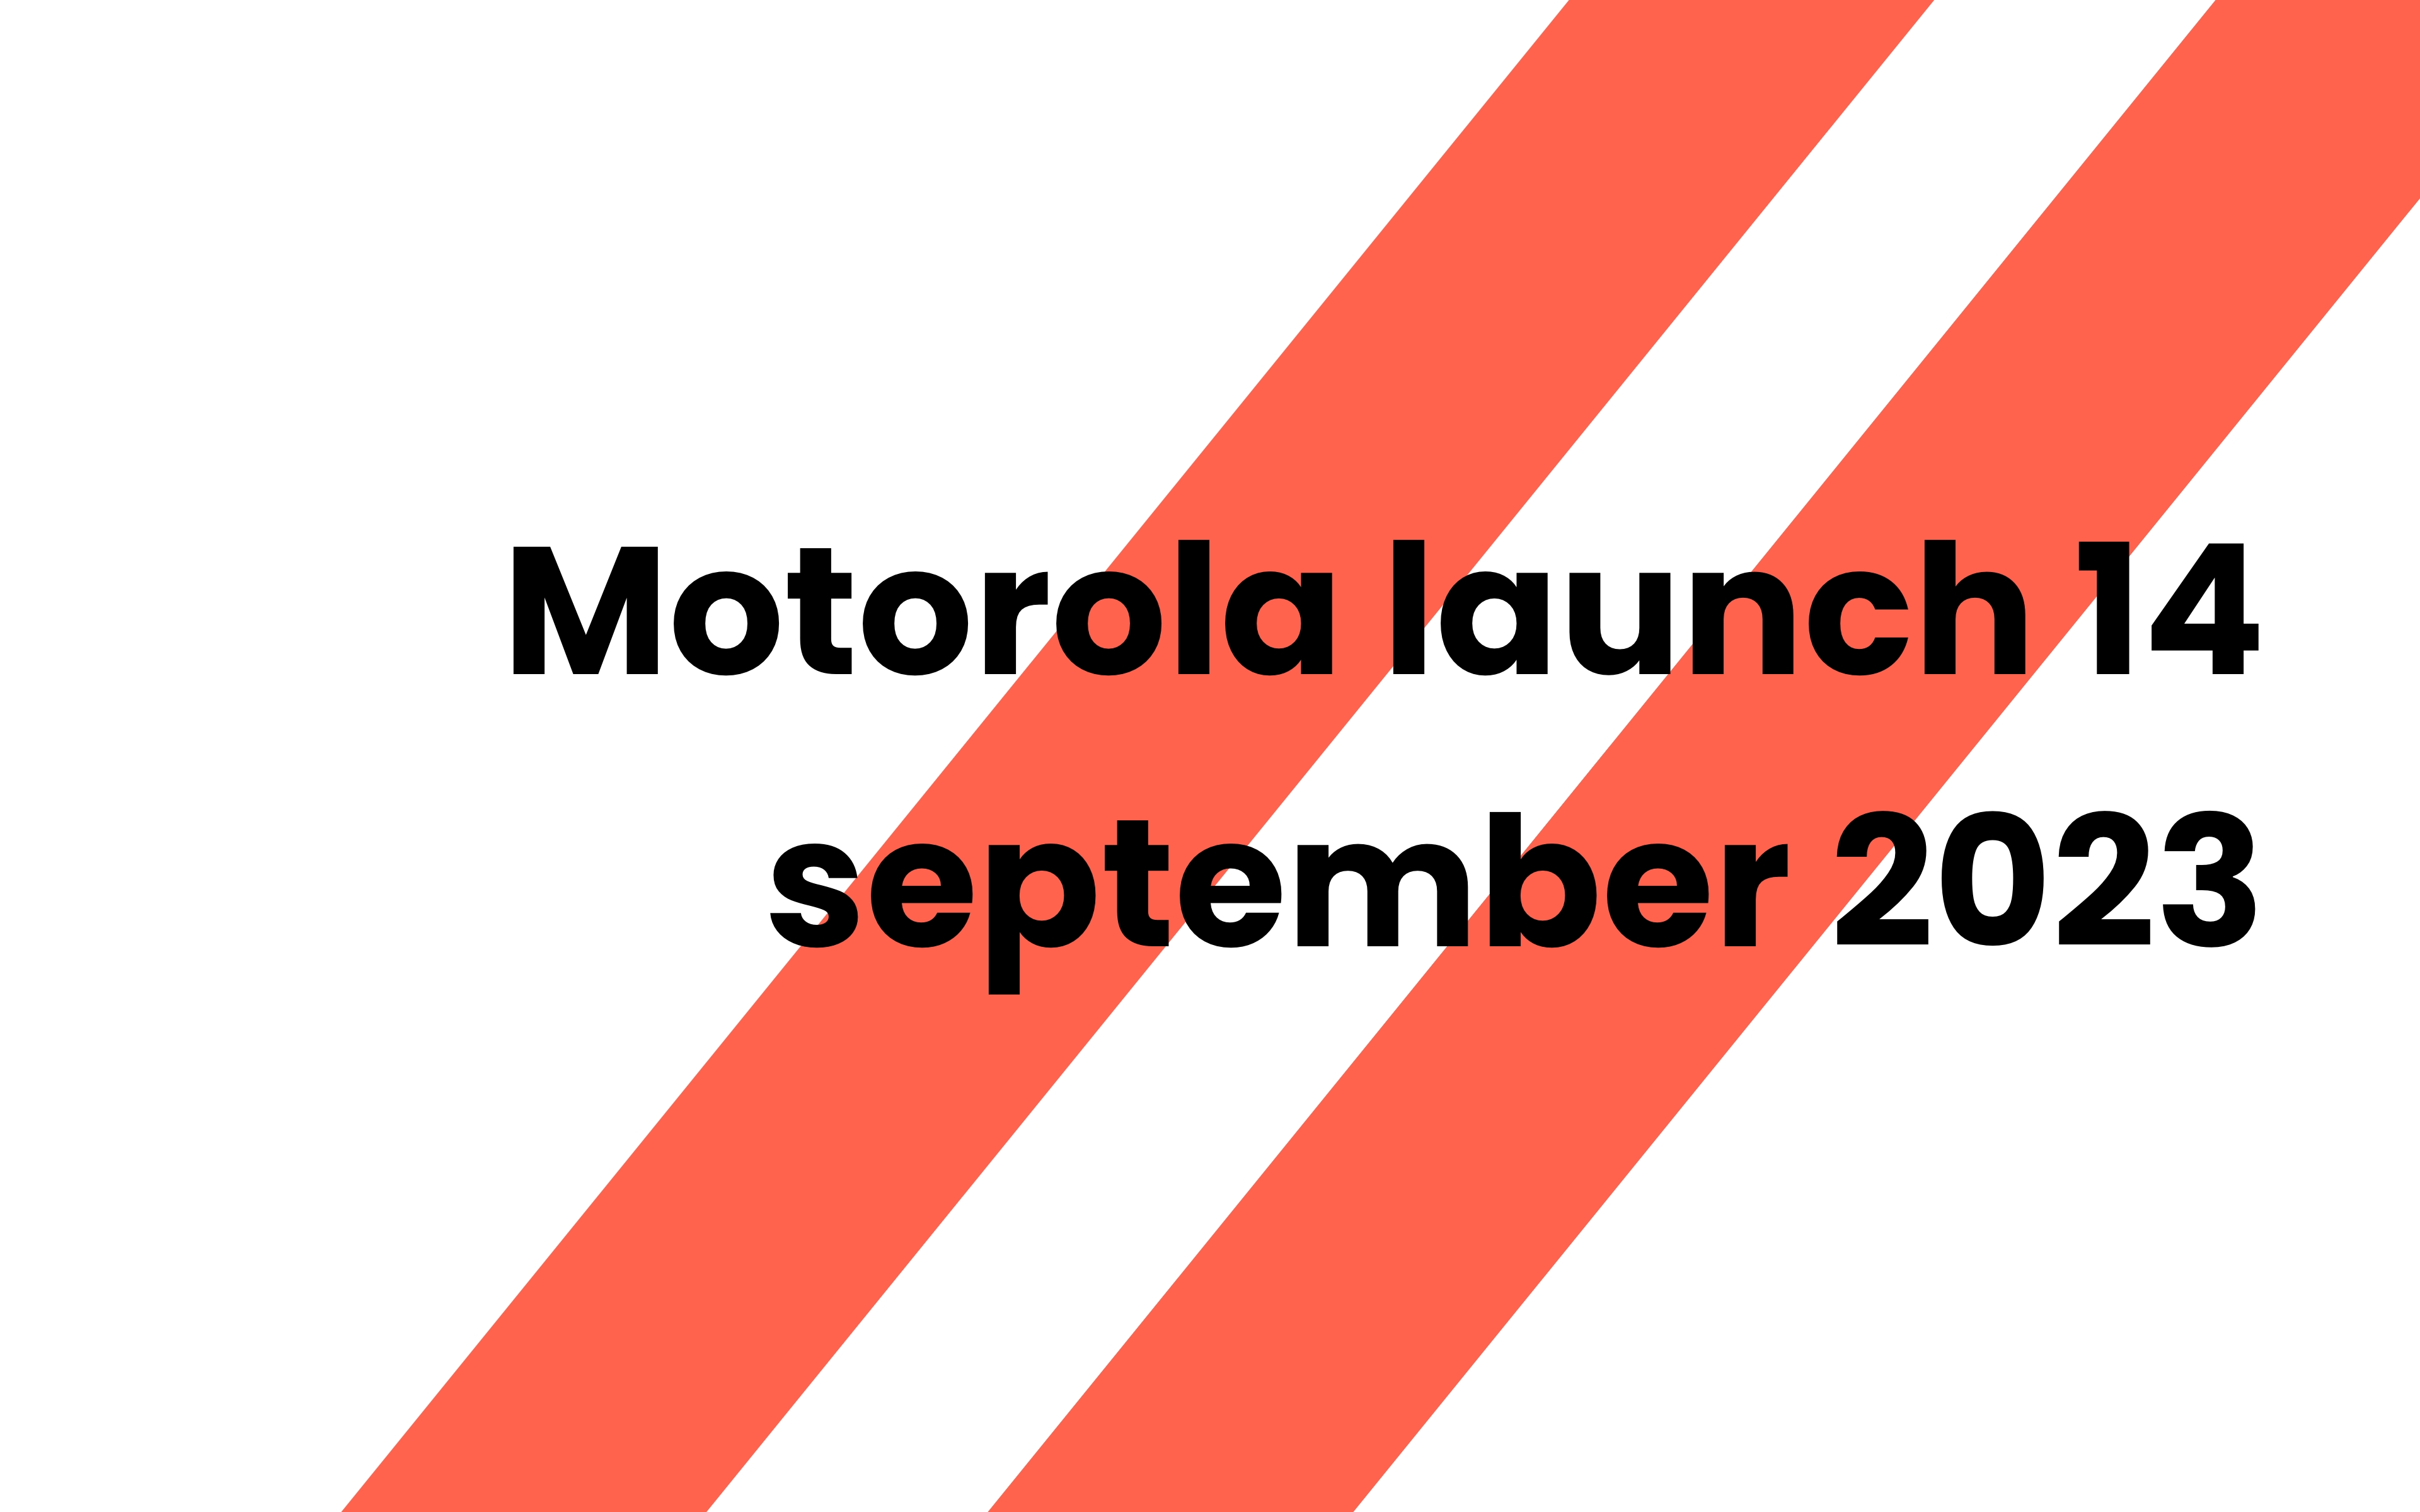 Nieuwste Motorola lancering op September 2023